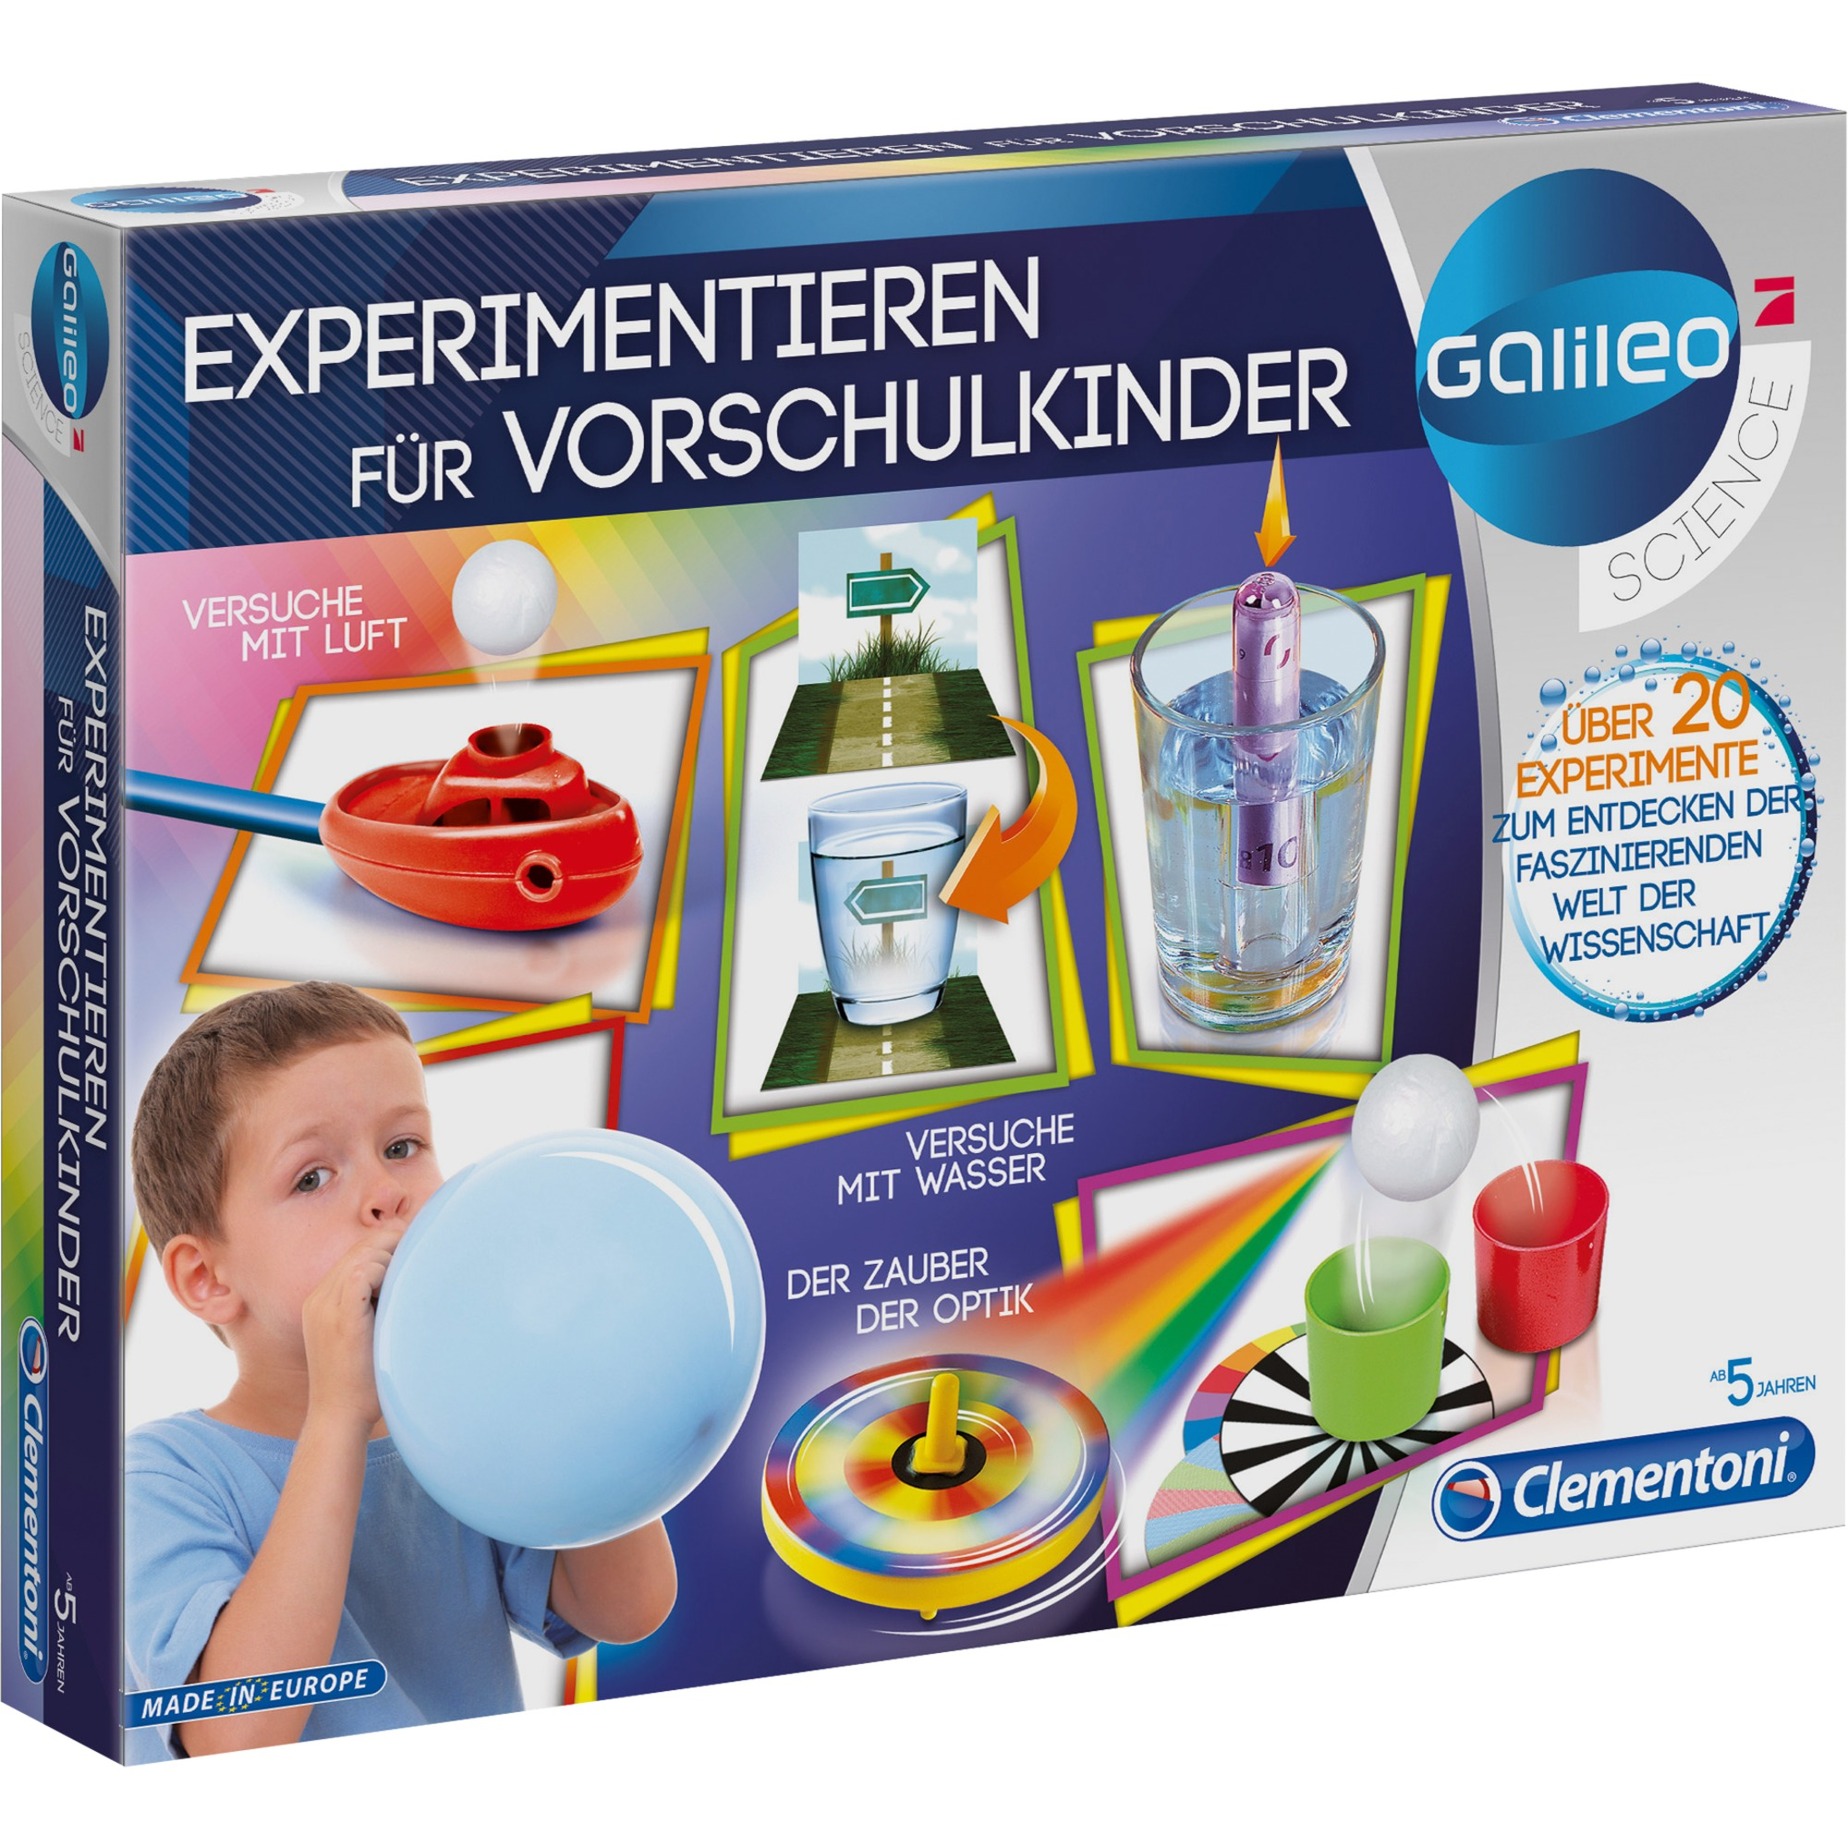 Image of Alternate - Experimentieren für Vorschulkinder, Experimentierkasten online einkaufen bei Alternate